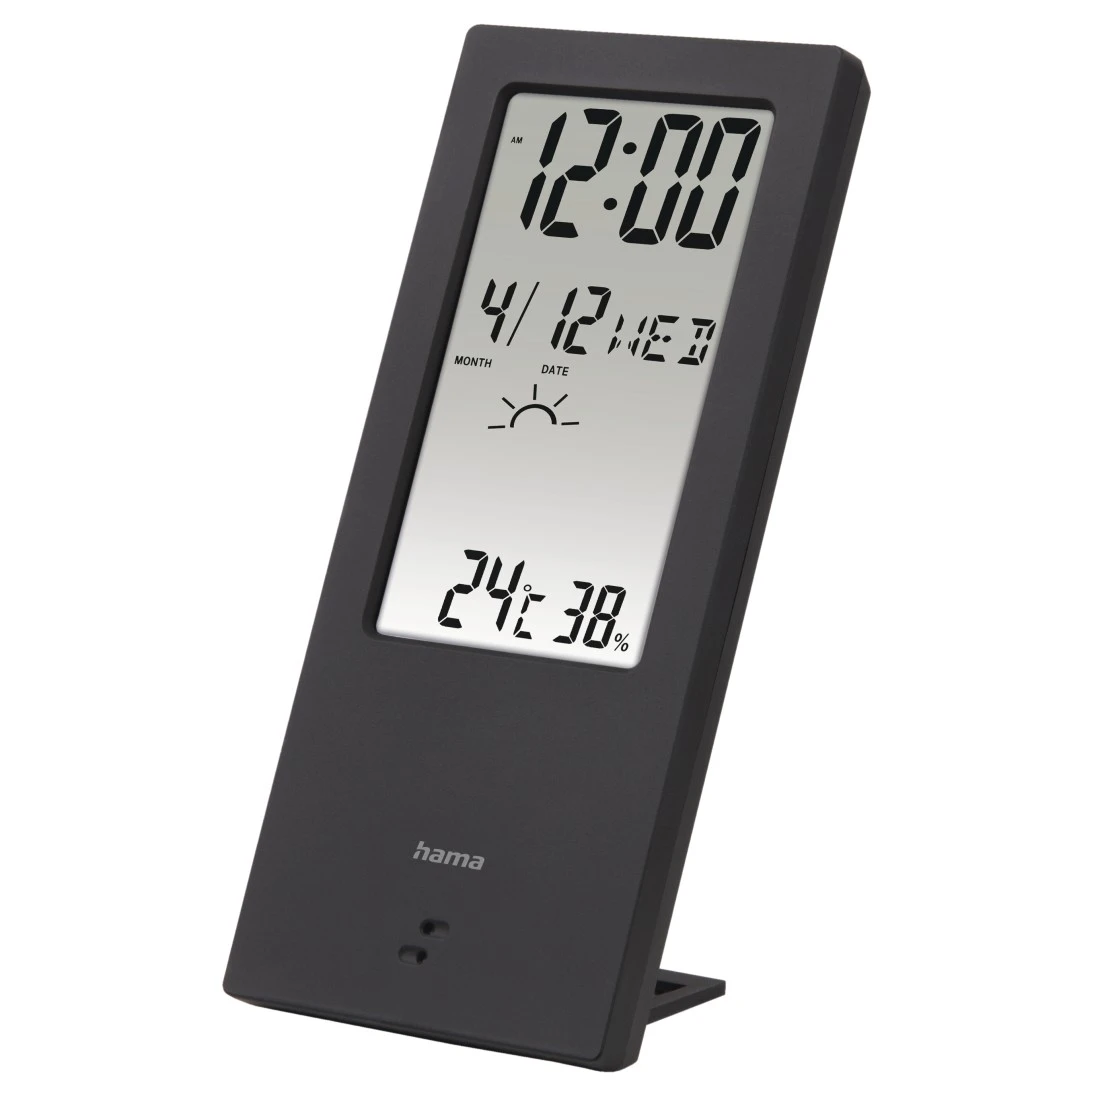 Thermomètre / Hygromètre électronique